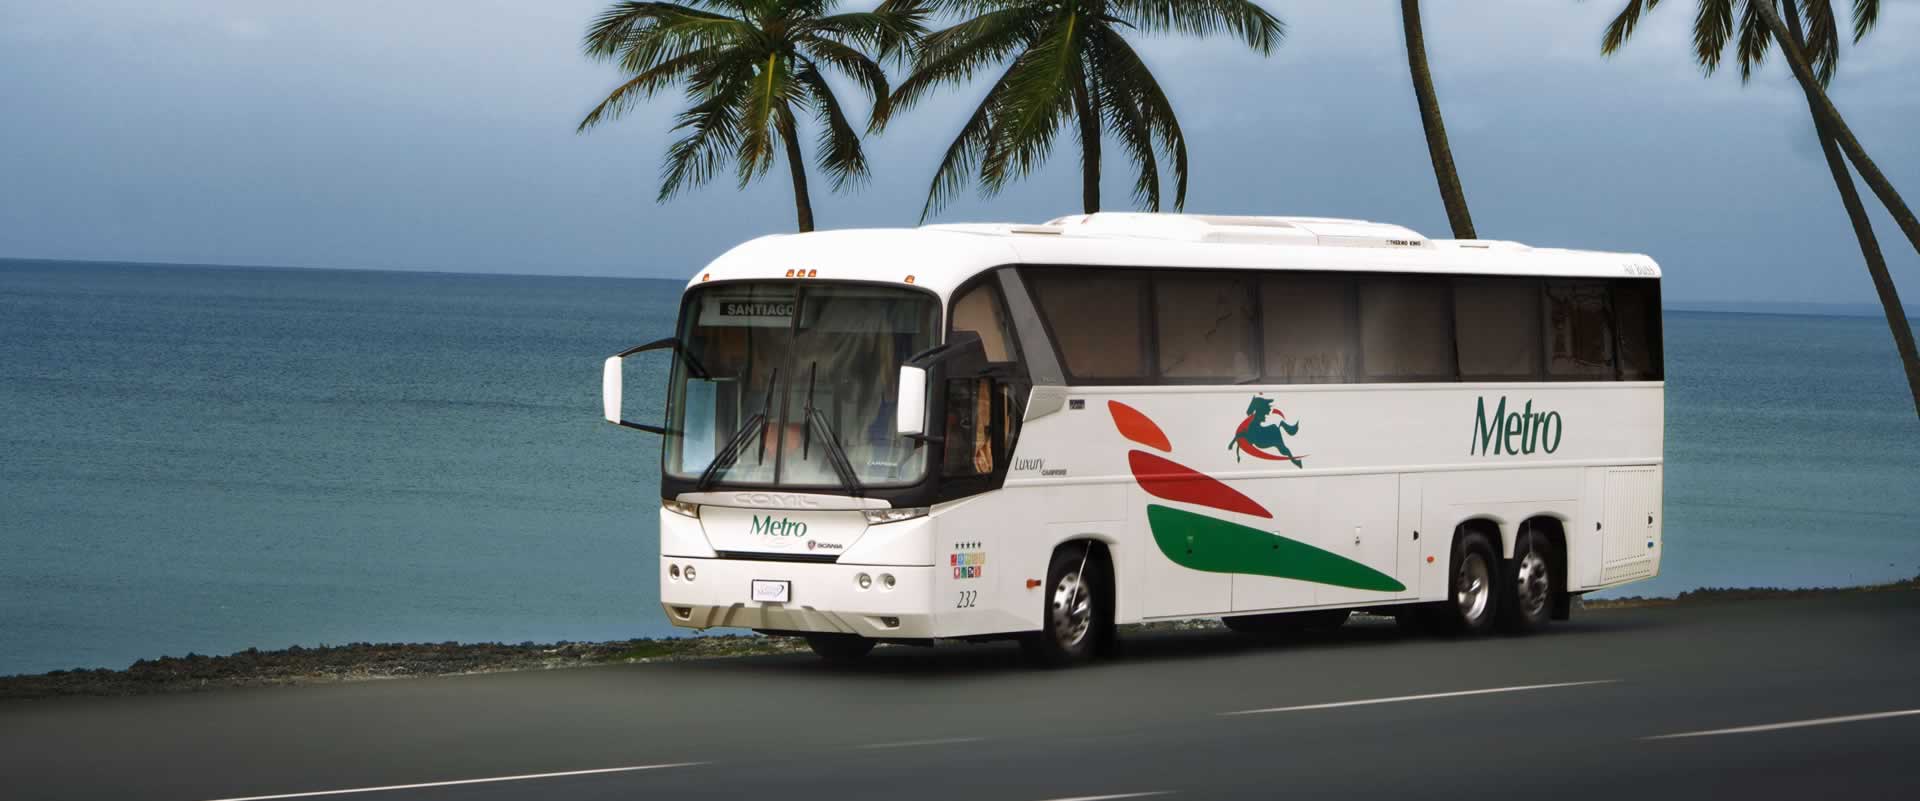 obshhestvennyj transport v dominikane